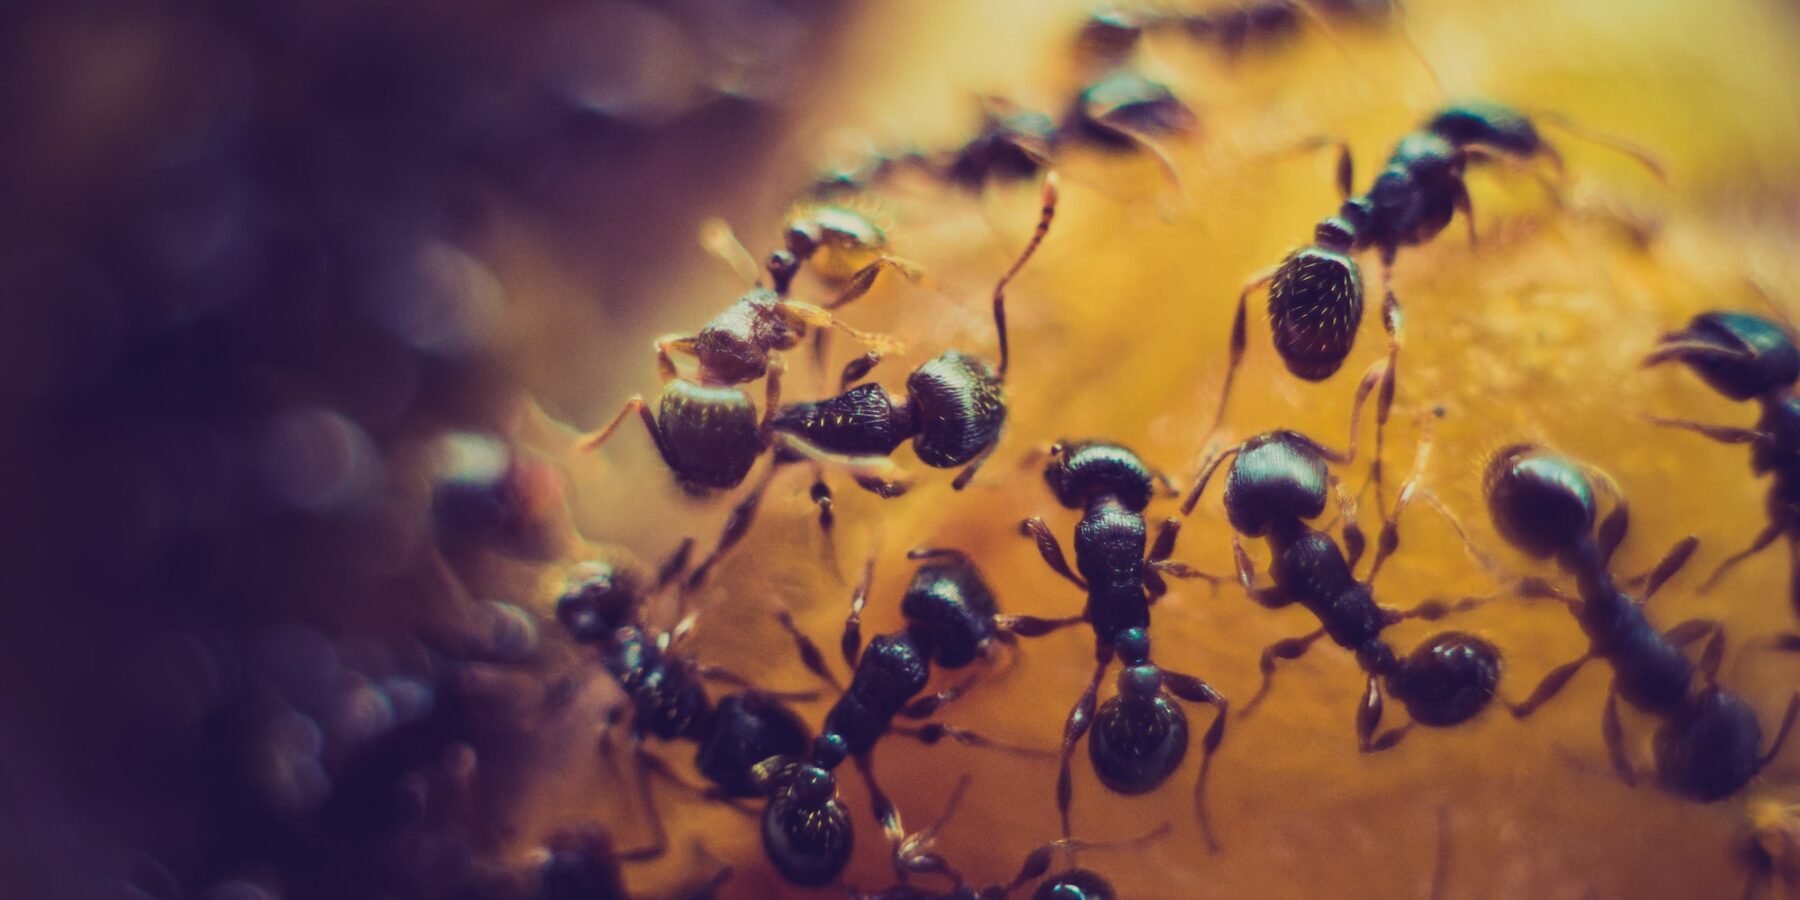 Czy wiesz, że mrówki potrafią hodować grzyby? #ekosystem #grzyby #mrówki #owady #zwierzęta - ciekawostki.app